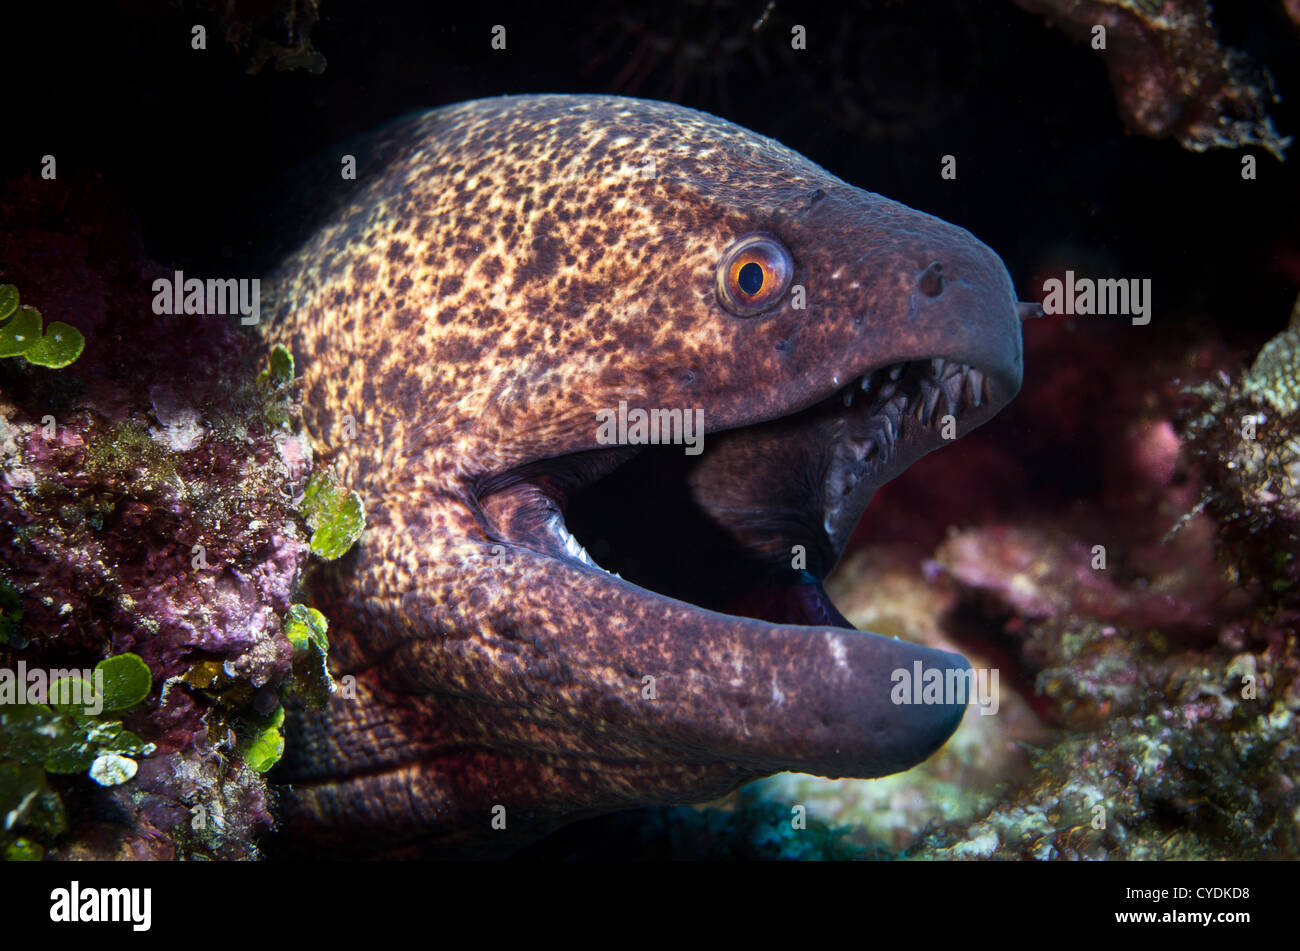 Moray eel, Okinawa Japan Stock Photo